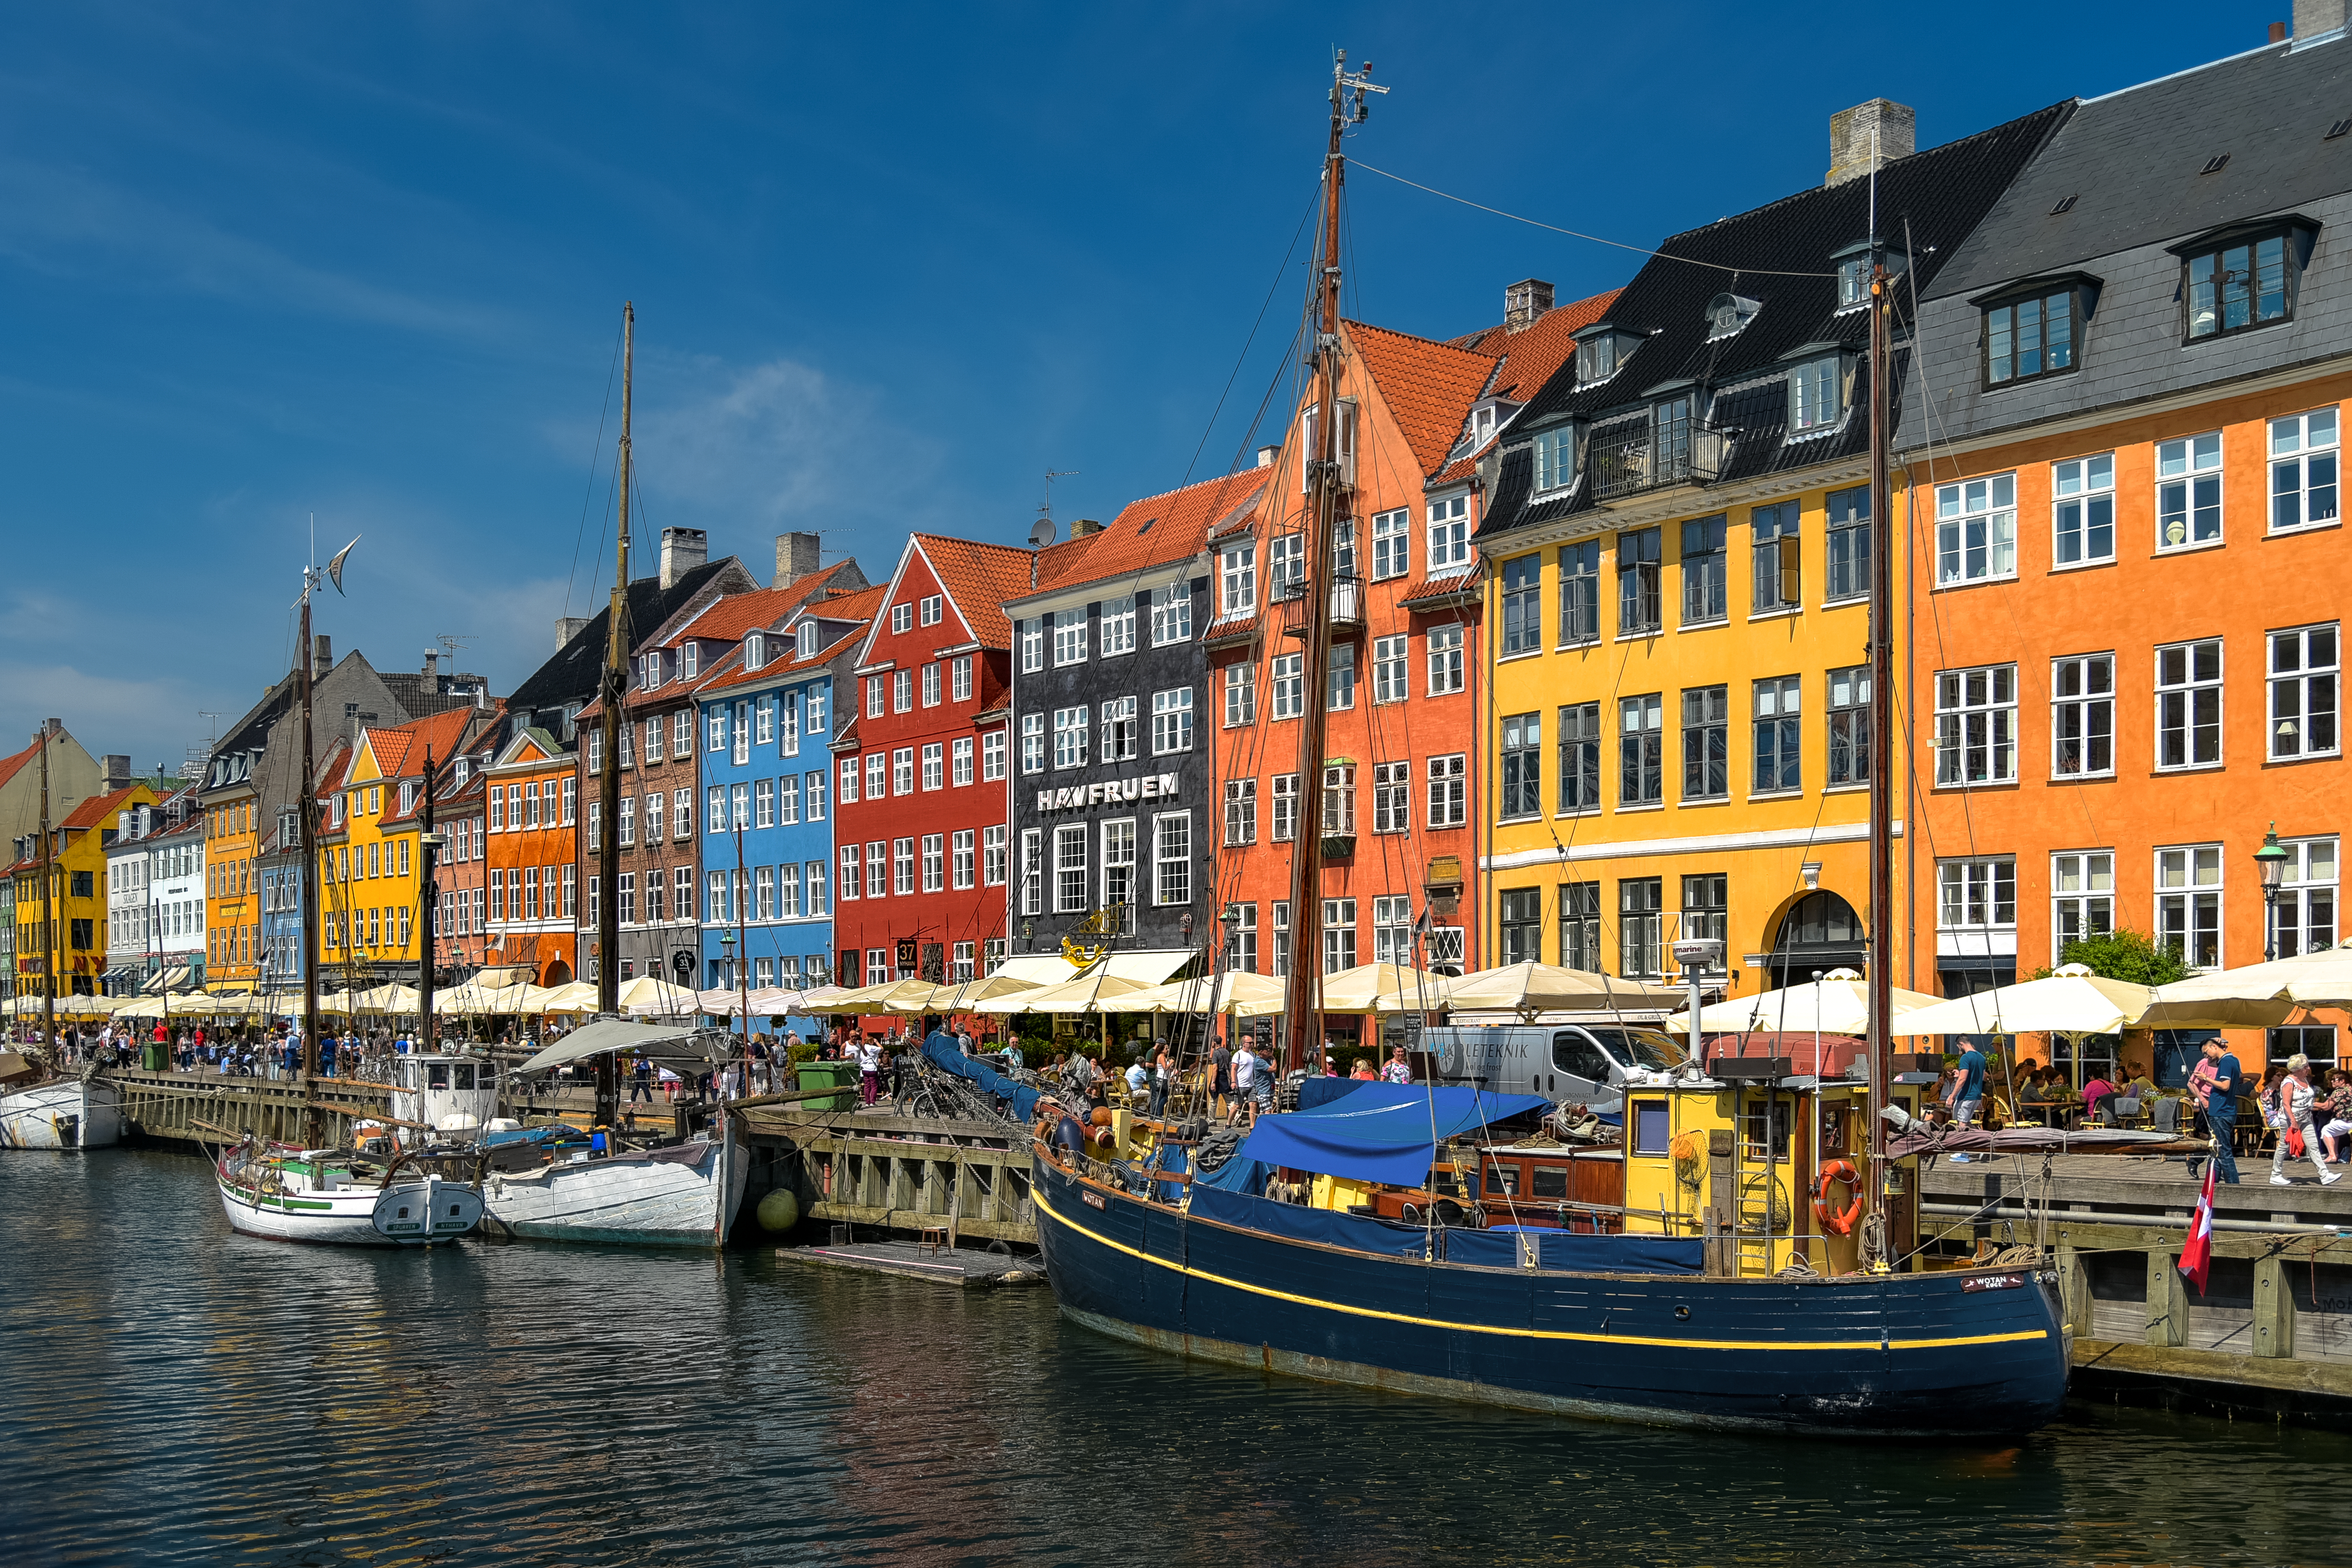 Dänemark das sicherste Land der Welt – Umfrage